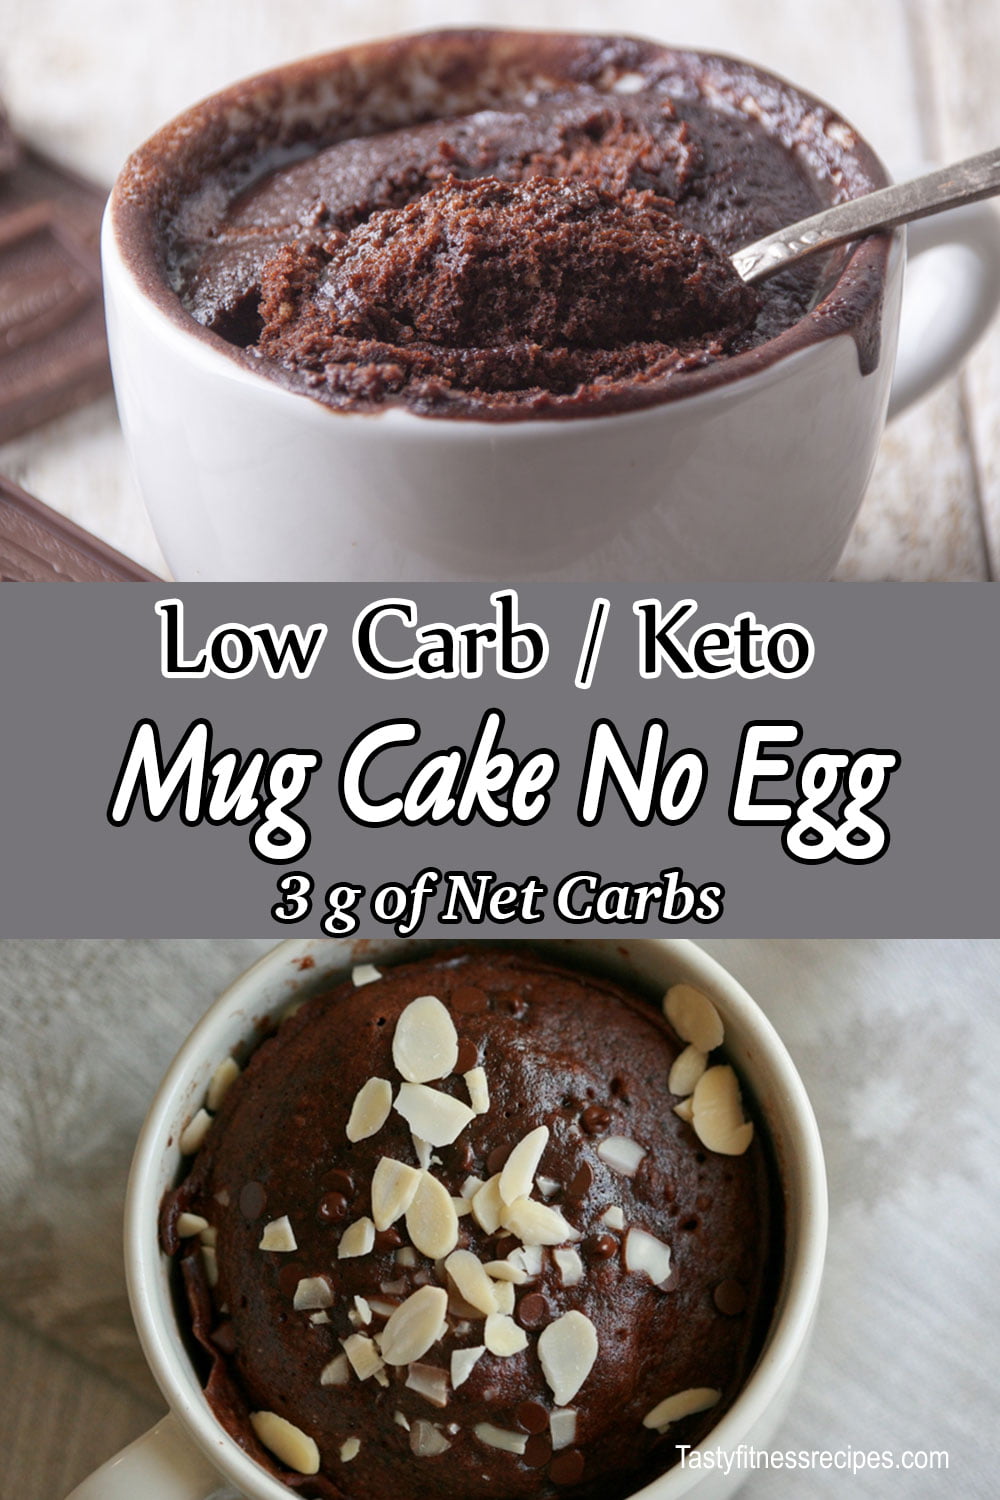 Keto Mug Cake No Egg Easy Low Carb Chocolate Mug Cake No Egg